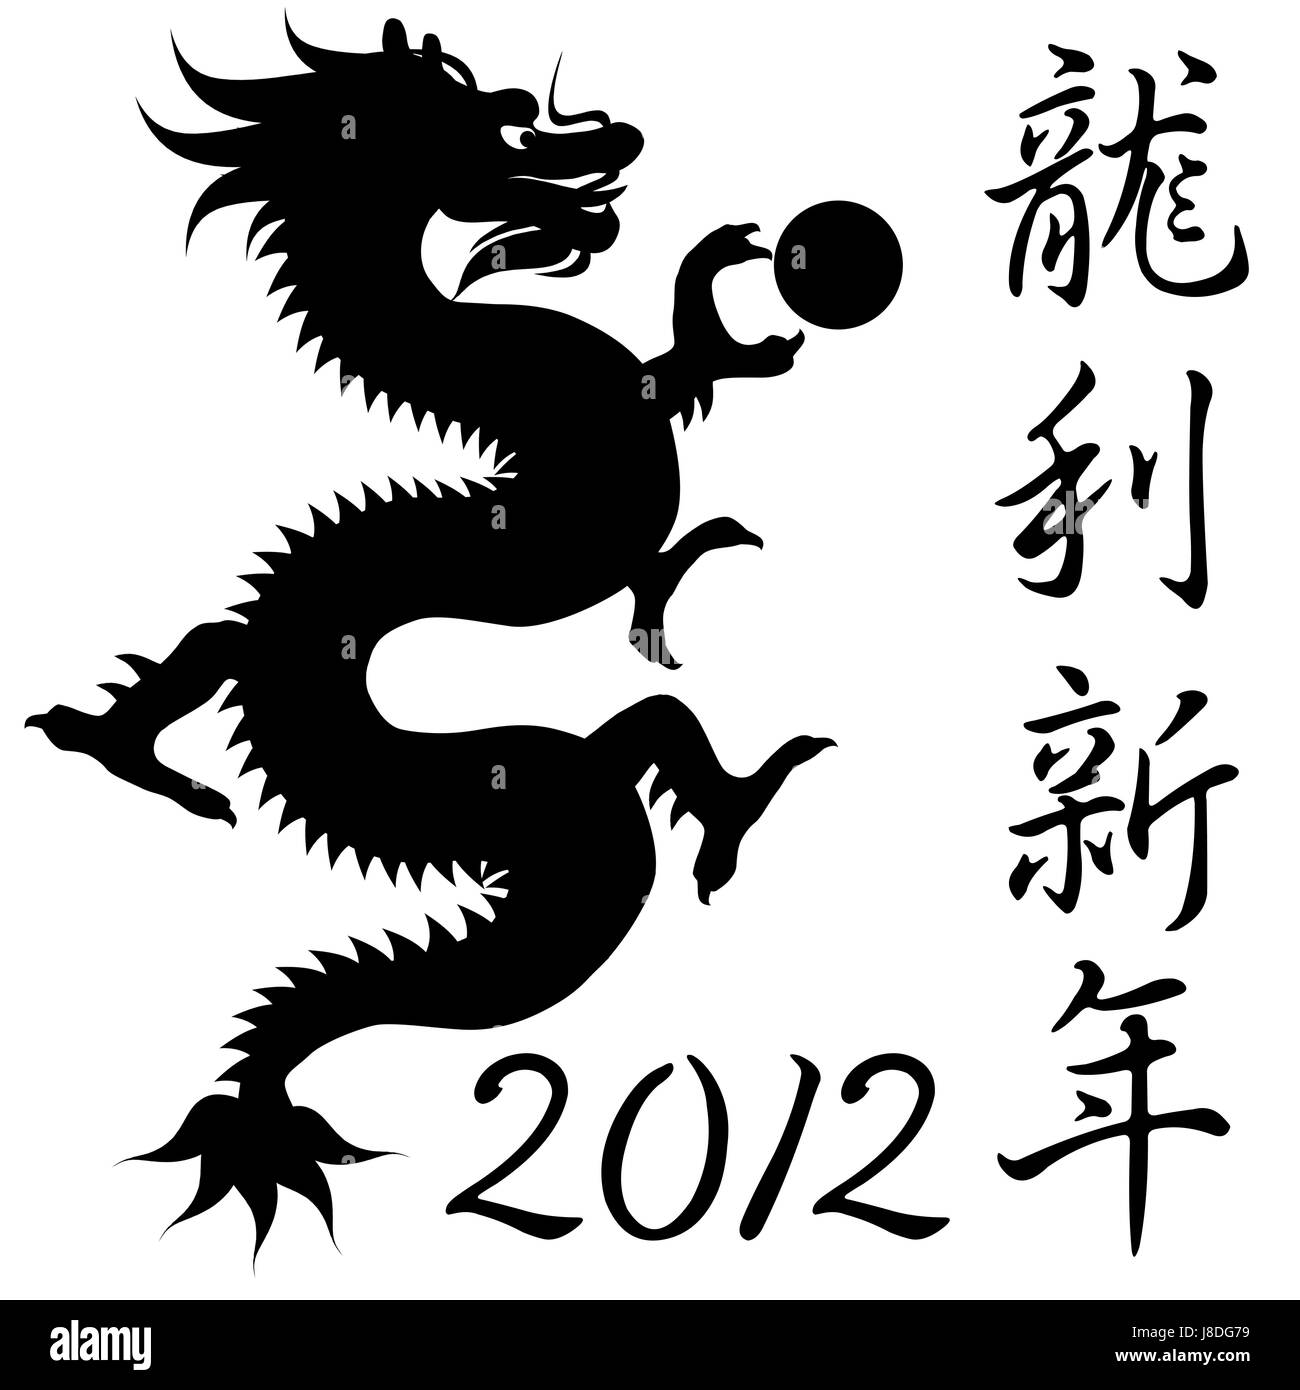 Год дракона по цвету. Китайские символы в виде дракона. 2012 Год дракона. Китайский иероглиф год дракона. Дракон 2012.